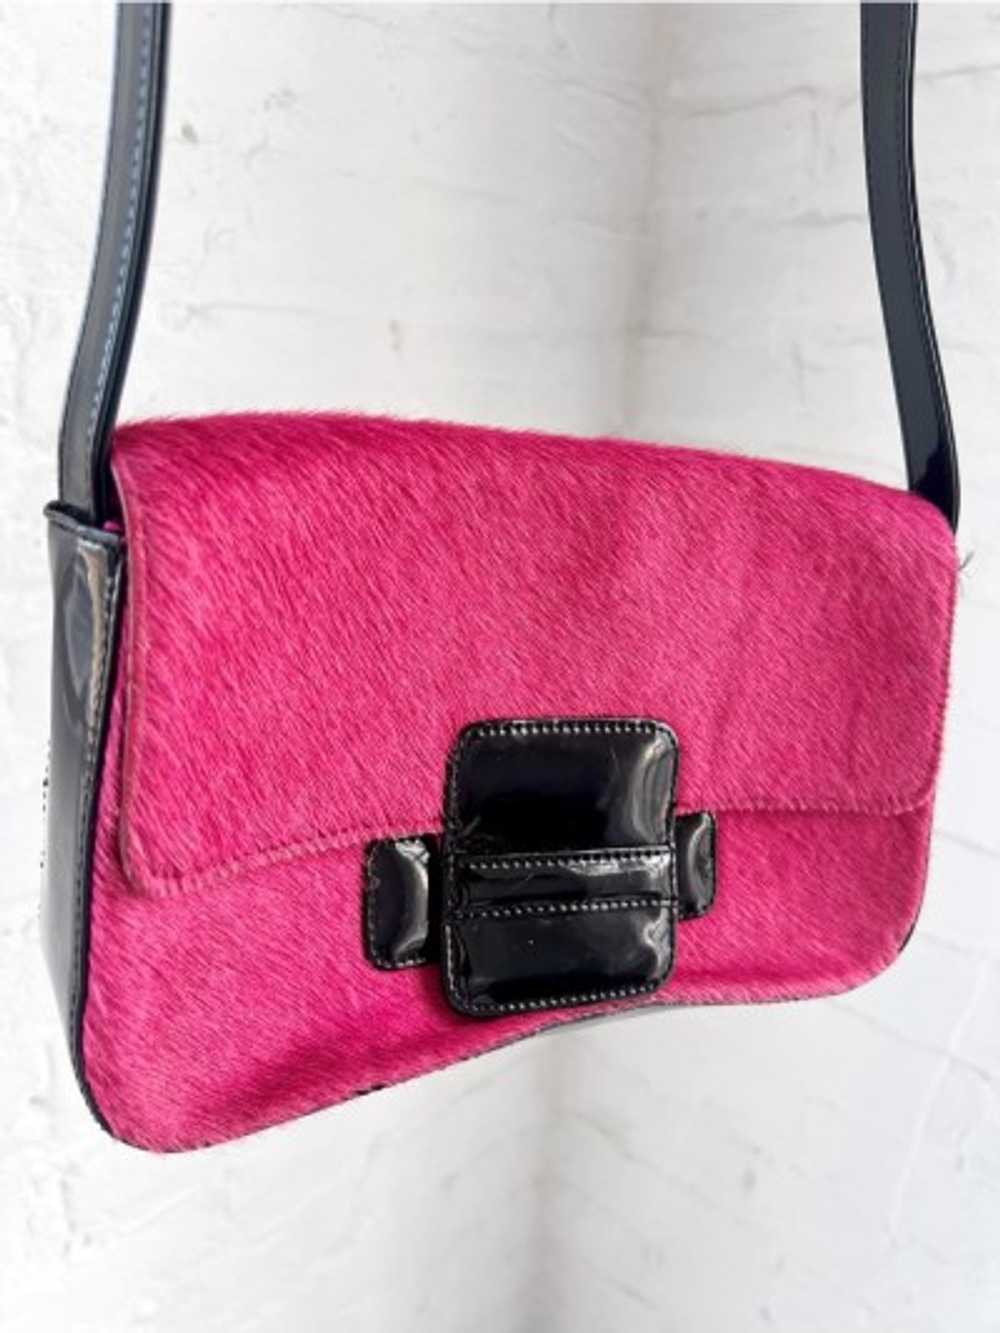 y2k pony hair & patent baguette purse - image 2